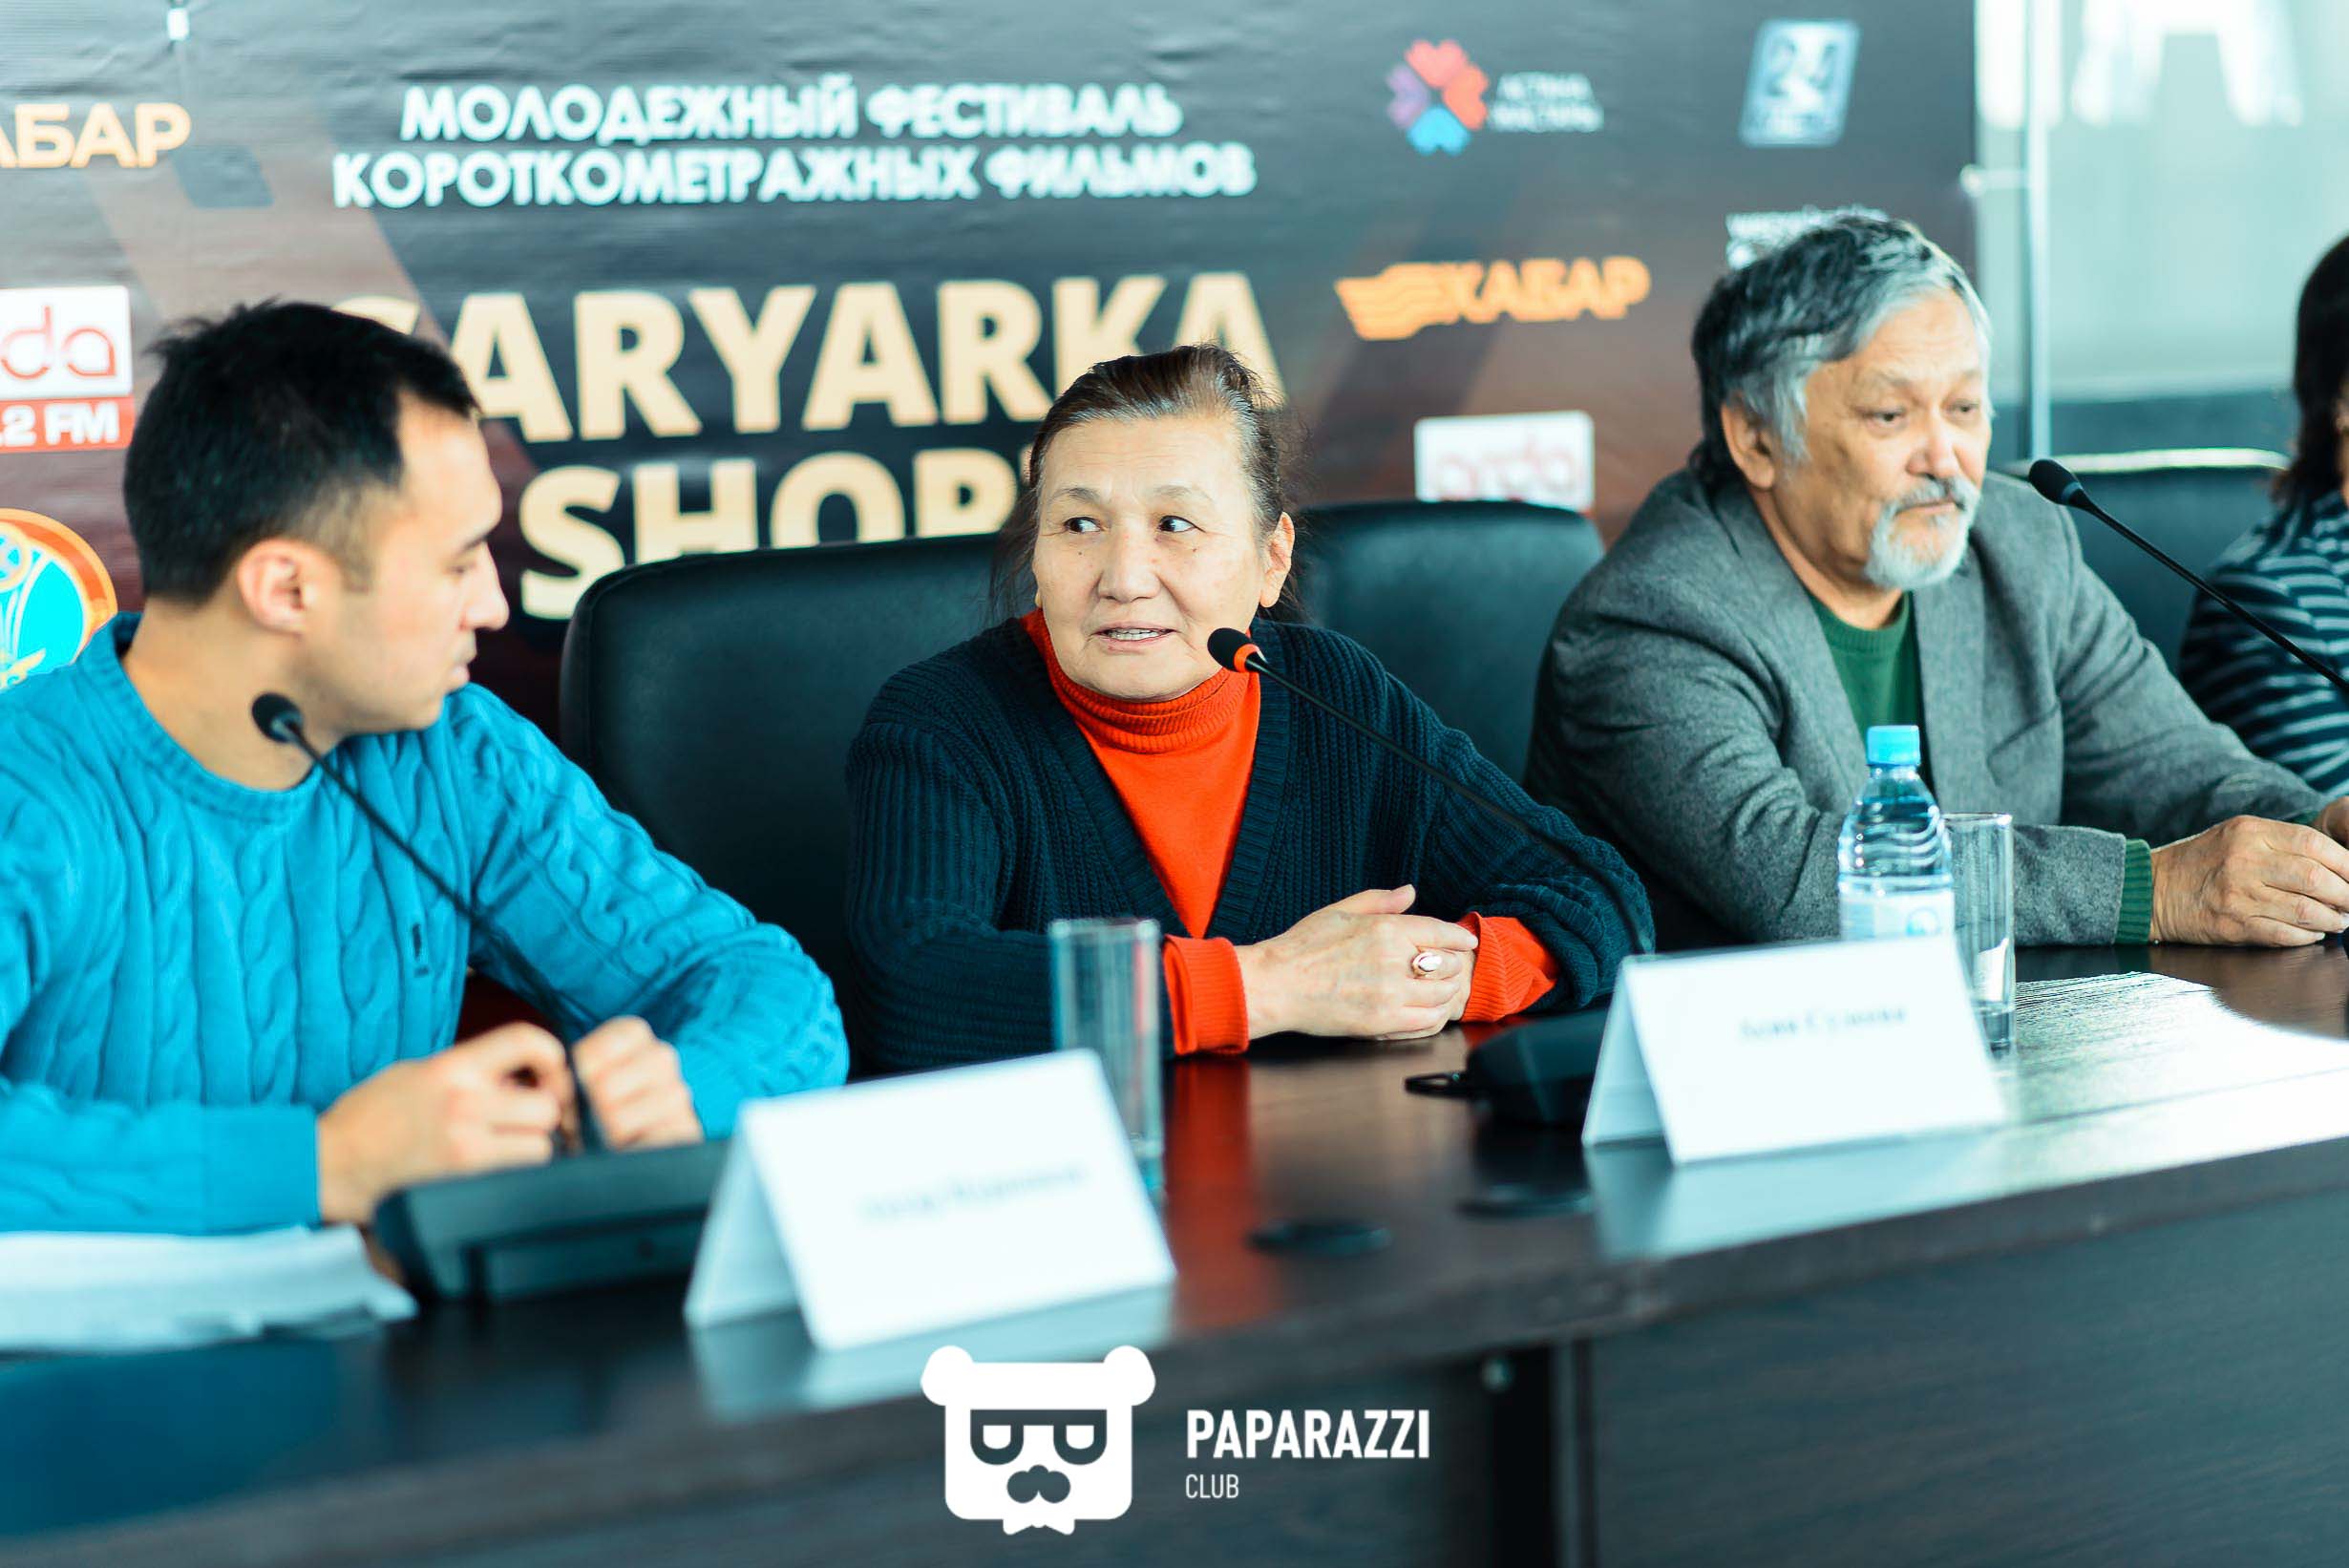 Пресс-конференция, приуроченная к Молодежному фестивалю короткометражных фильмов Saryarka short film festival